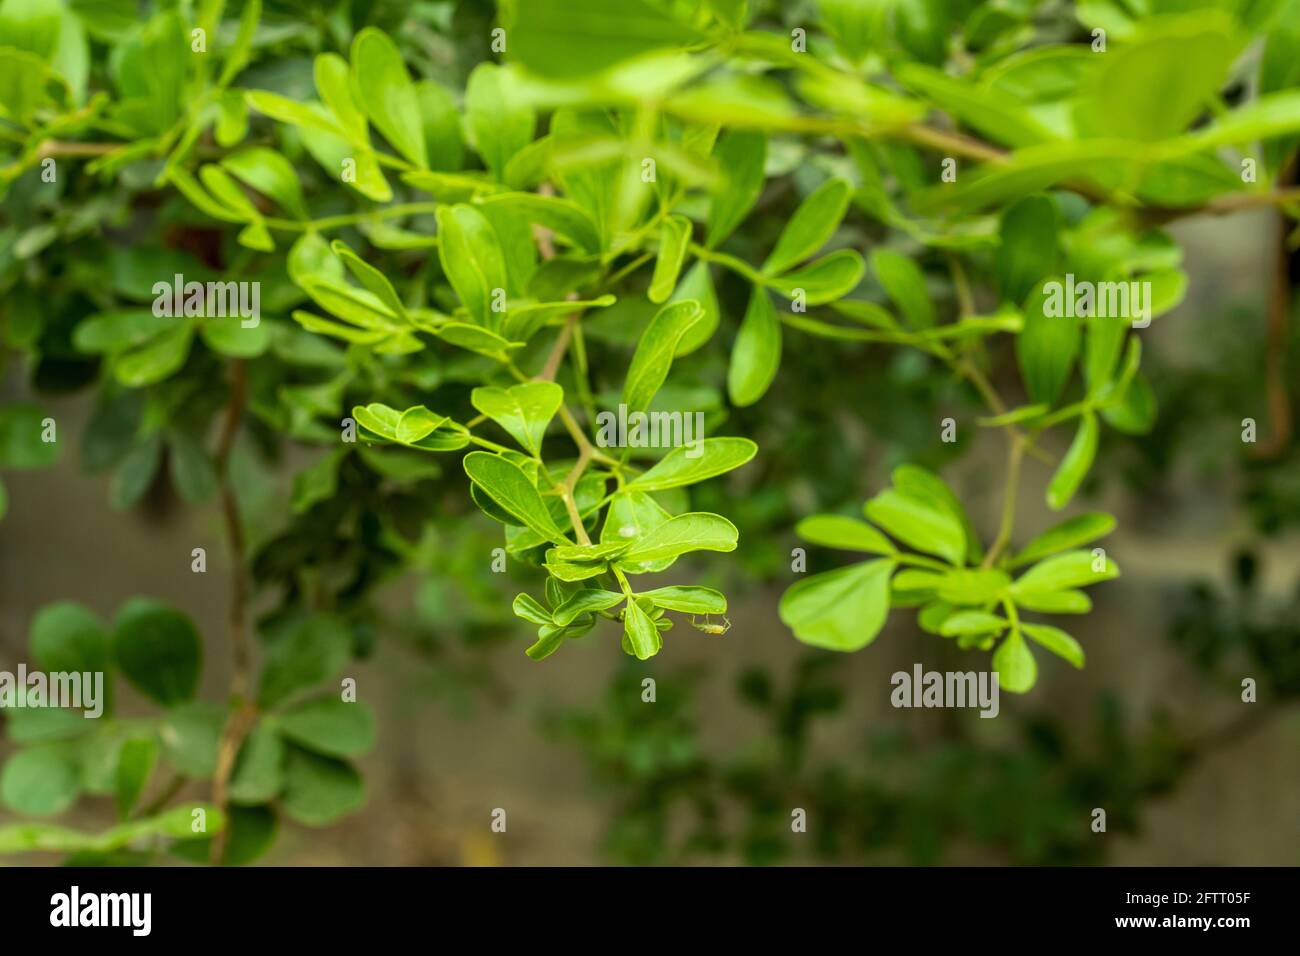 Holz-Apfel grünen Baum und klein ein paar Stiele und Blätter Stockfoto